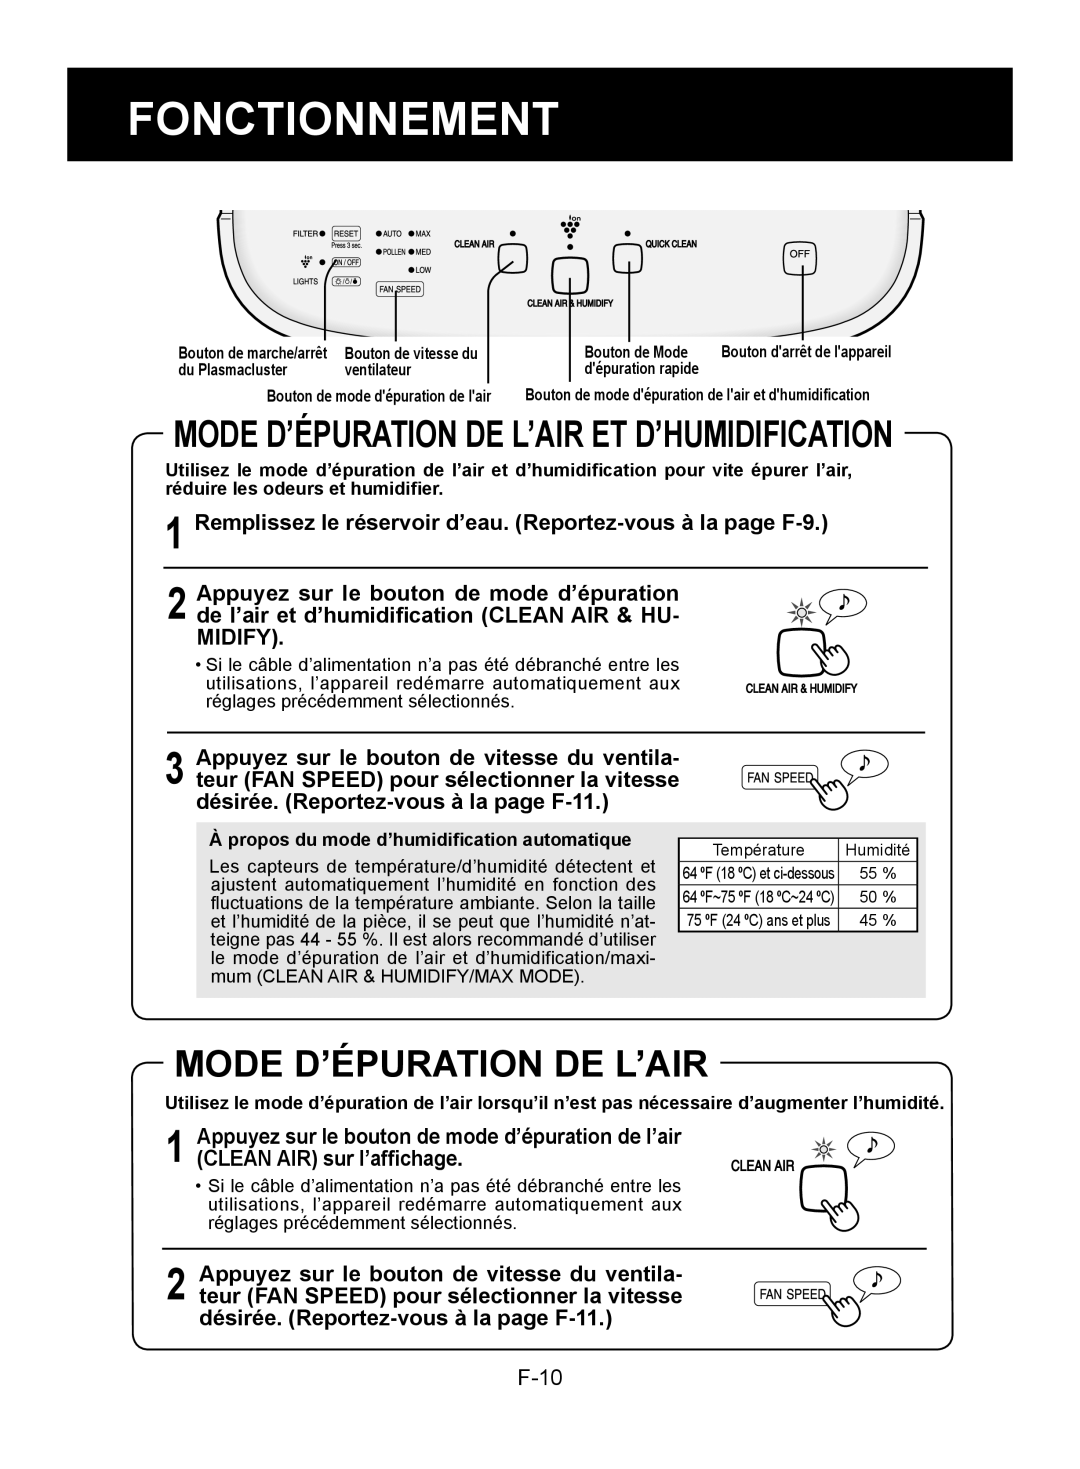 Sharp KC-850U operation manual Fonctionnement, Mode D’Épuration De L’Air Et D’Humidification 